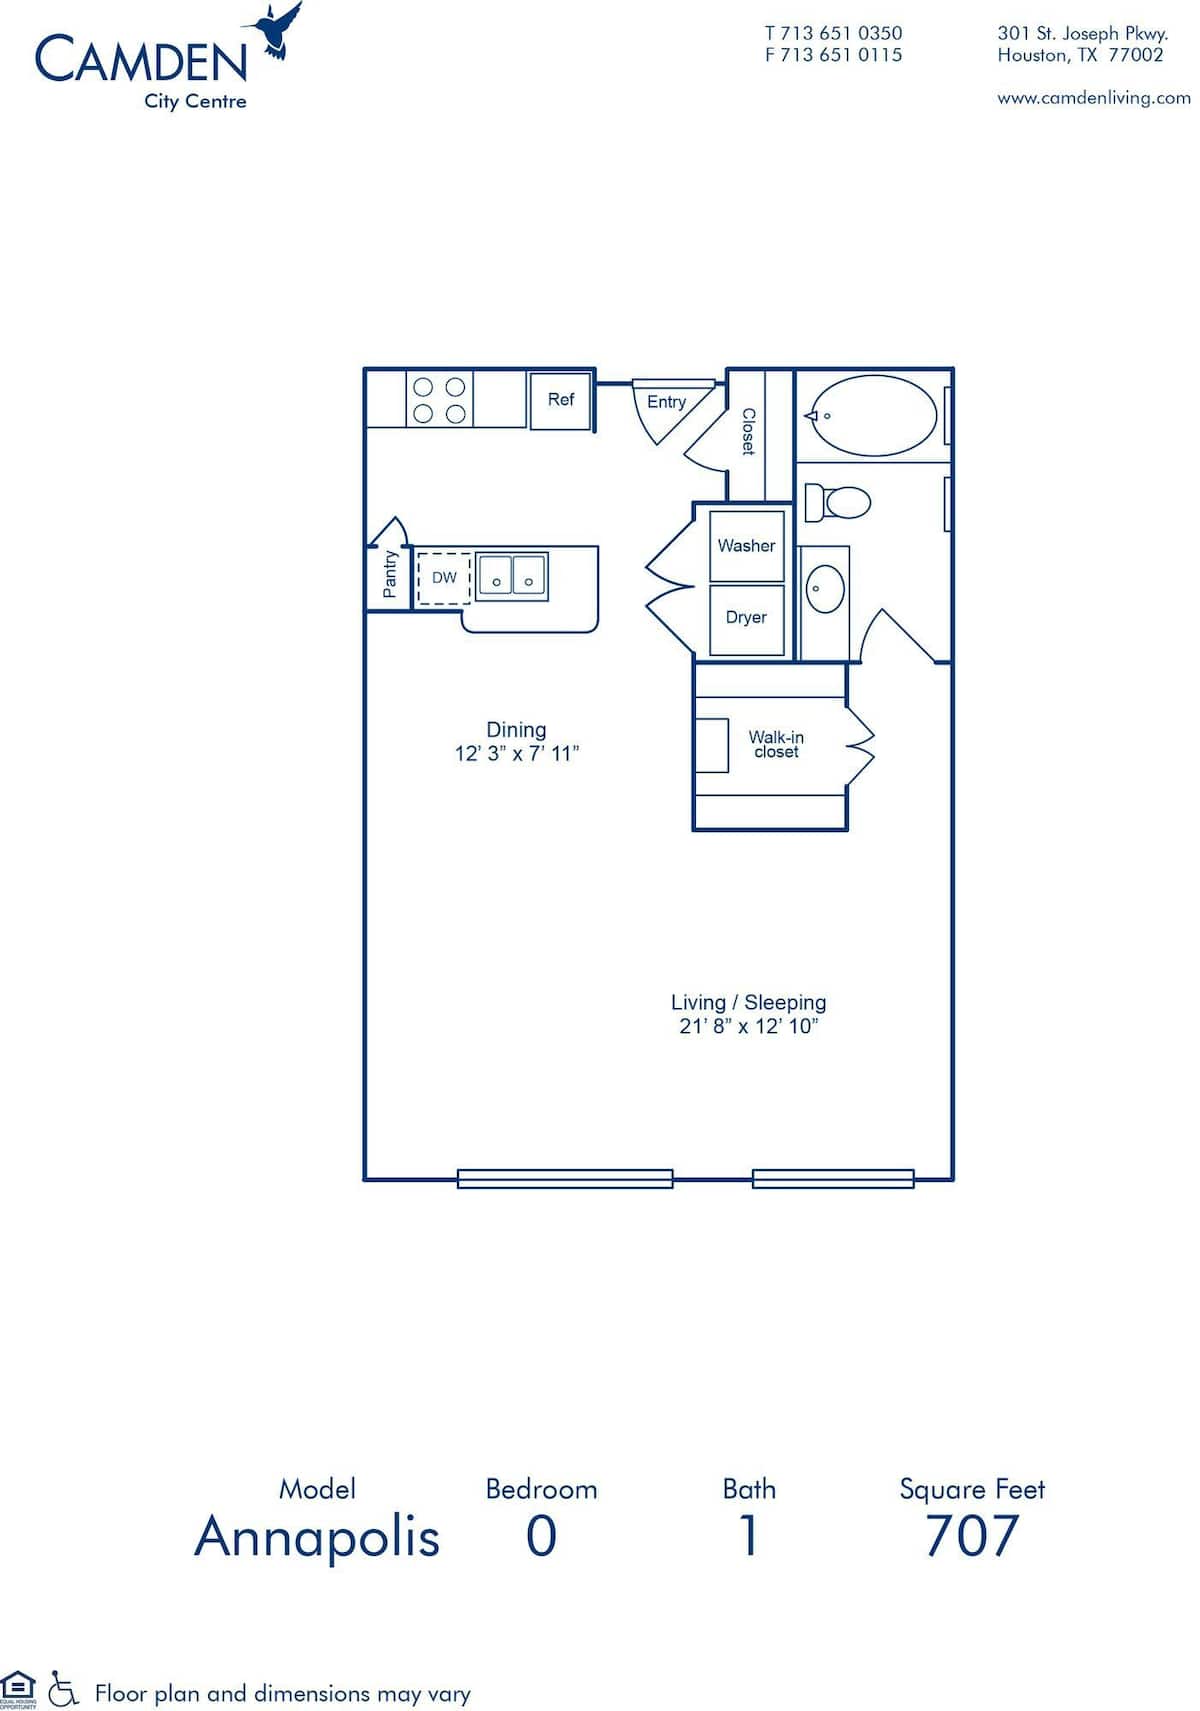 Floorplan diagram for Annapolis, showing Studio